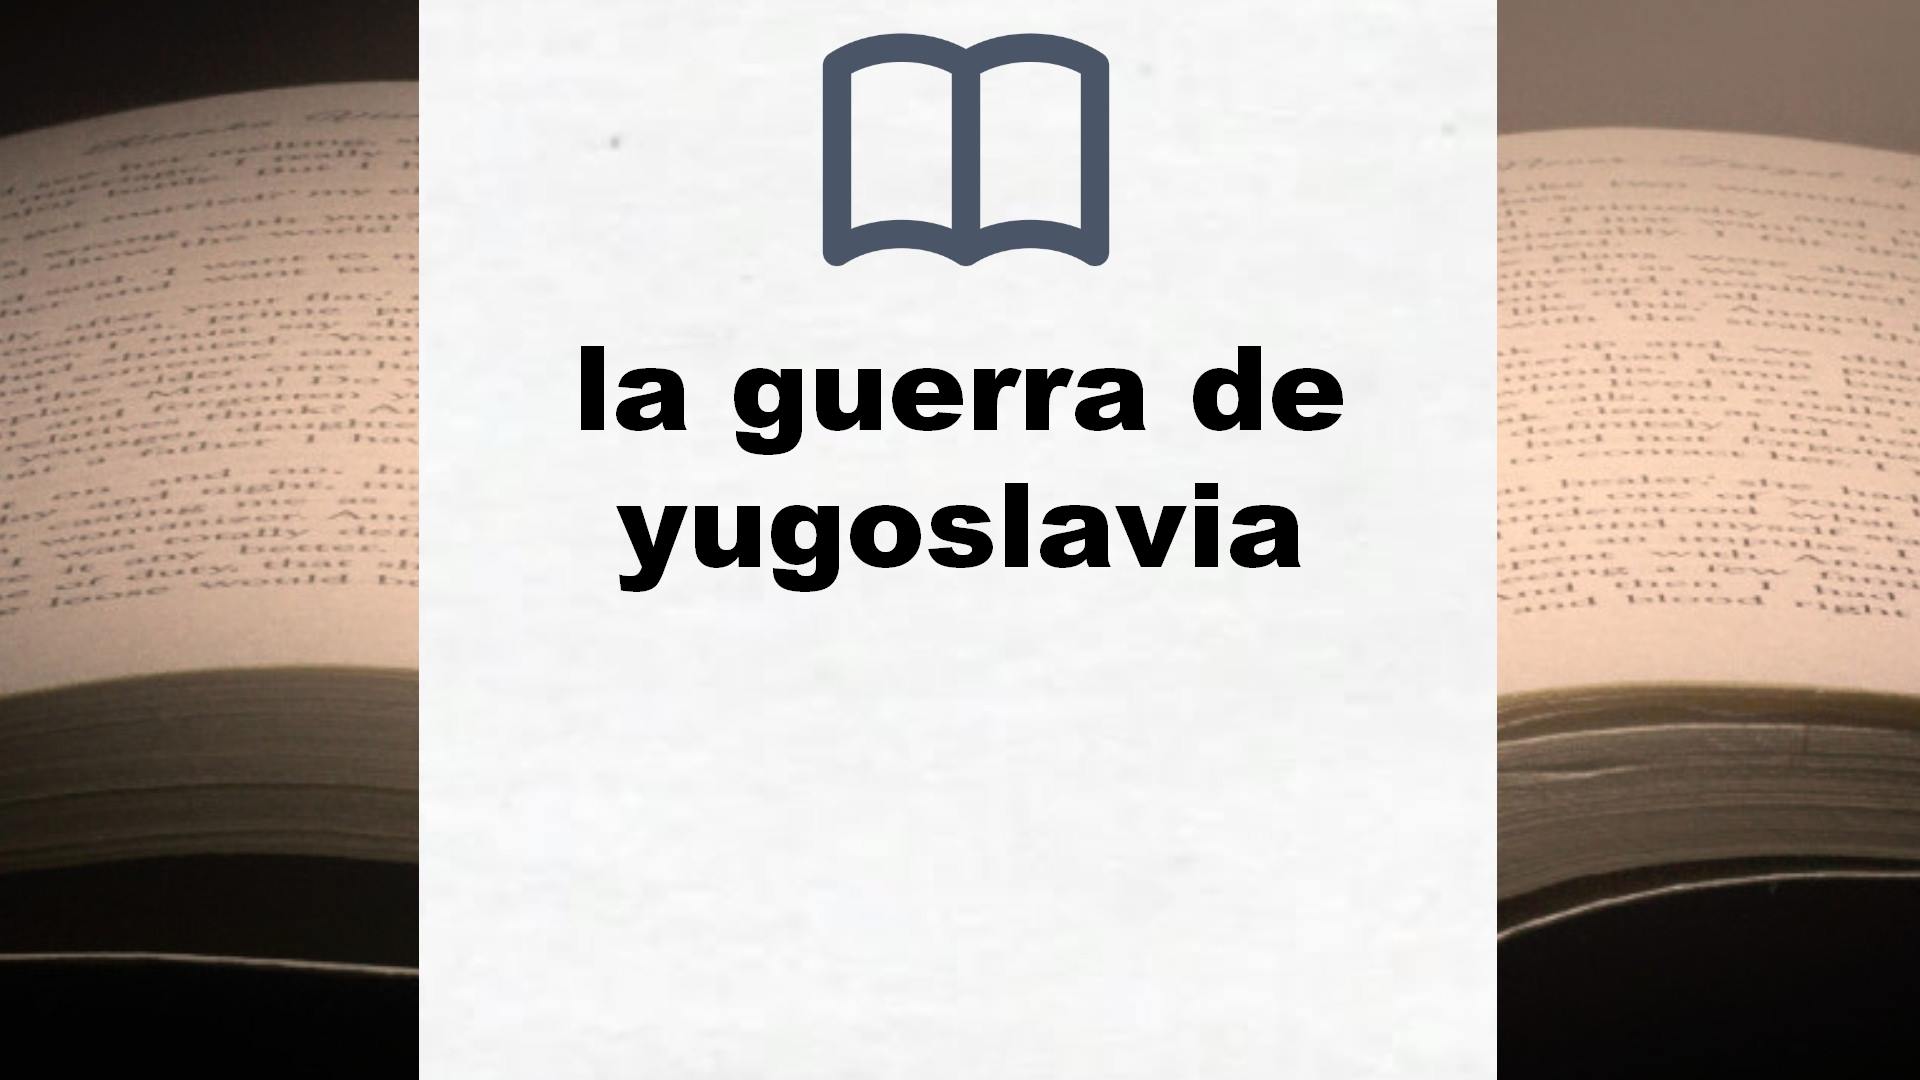 Libros sobre la guerra de yugoslavia